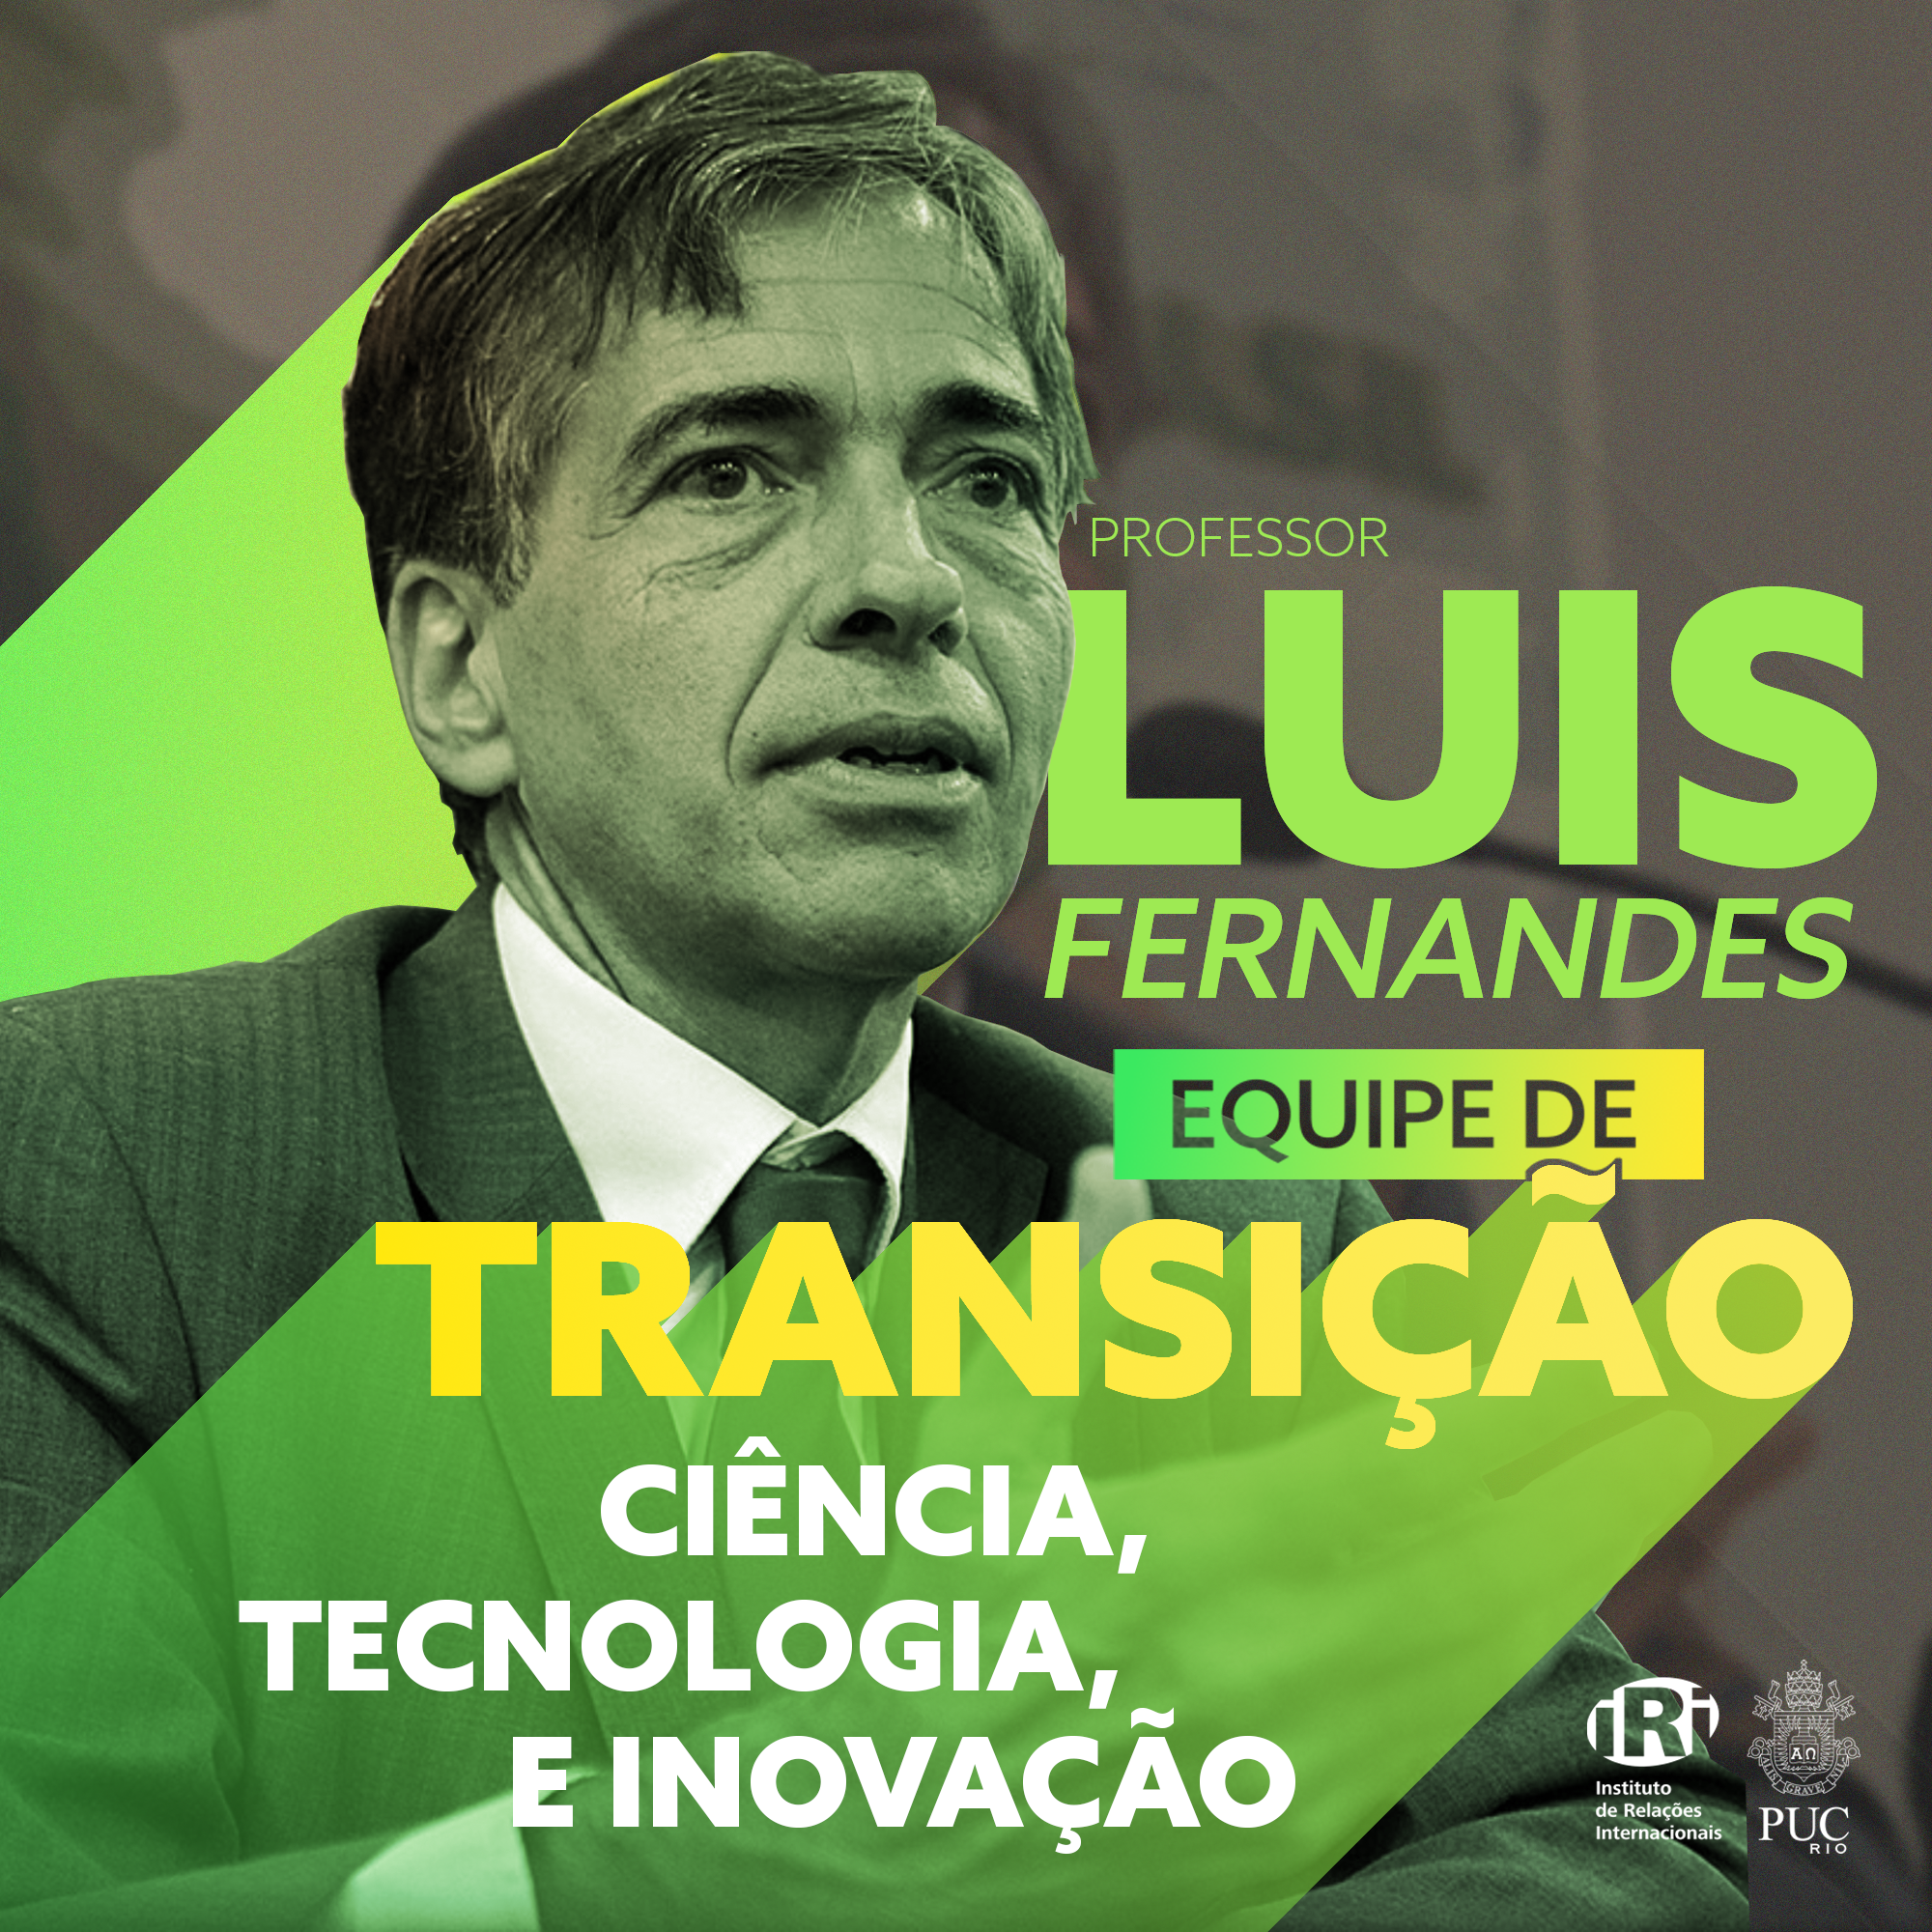 Luis Fernandes, diretor do IRI, assume posição na Coordenação de Transição de Governo na área de Ciência, Tecnologia e Inovação (CT&I)